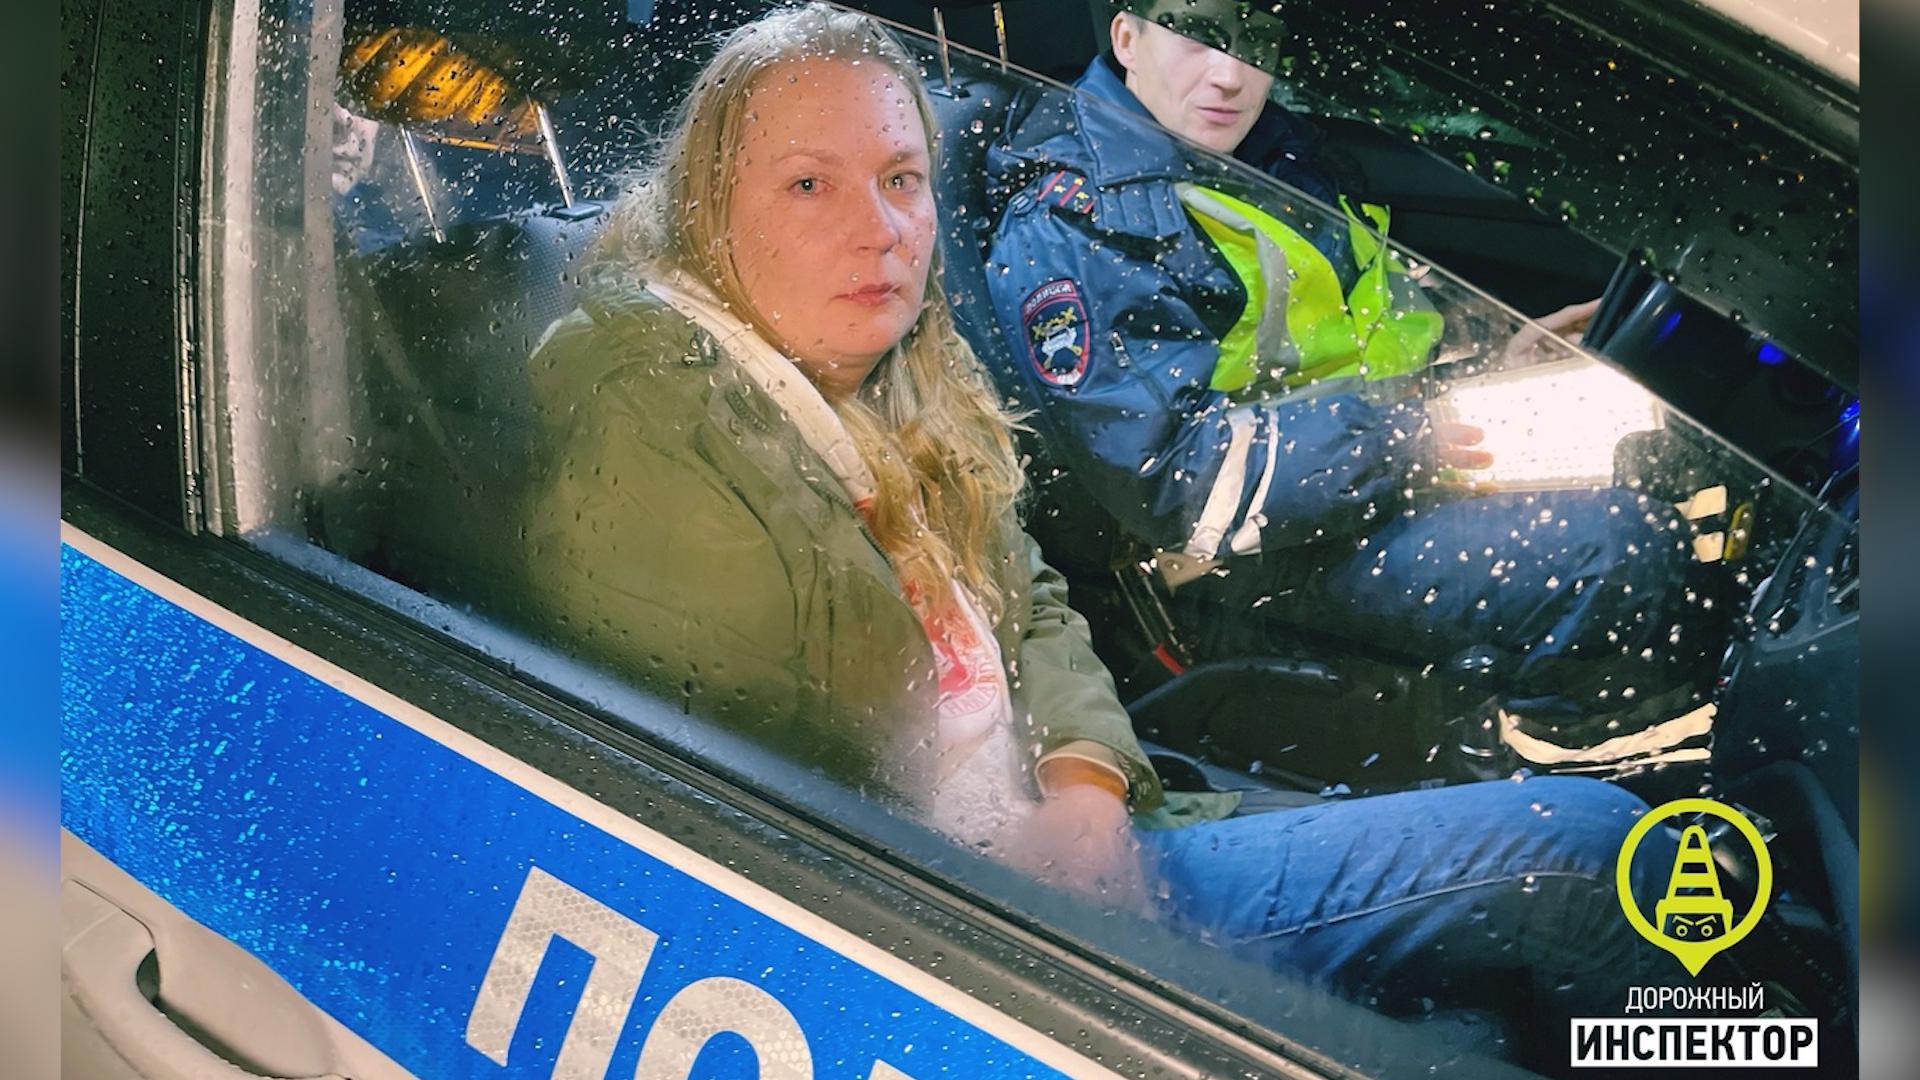 В Сочи пьяную женщину задержали за рулем с ребенком в машине